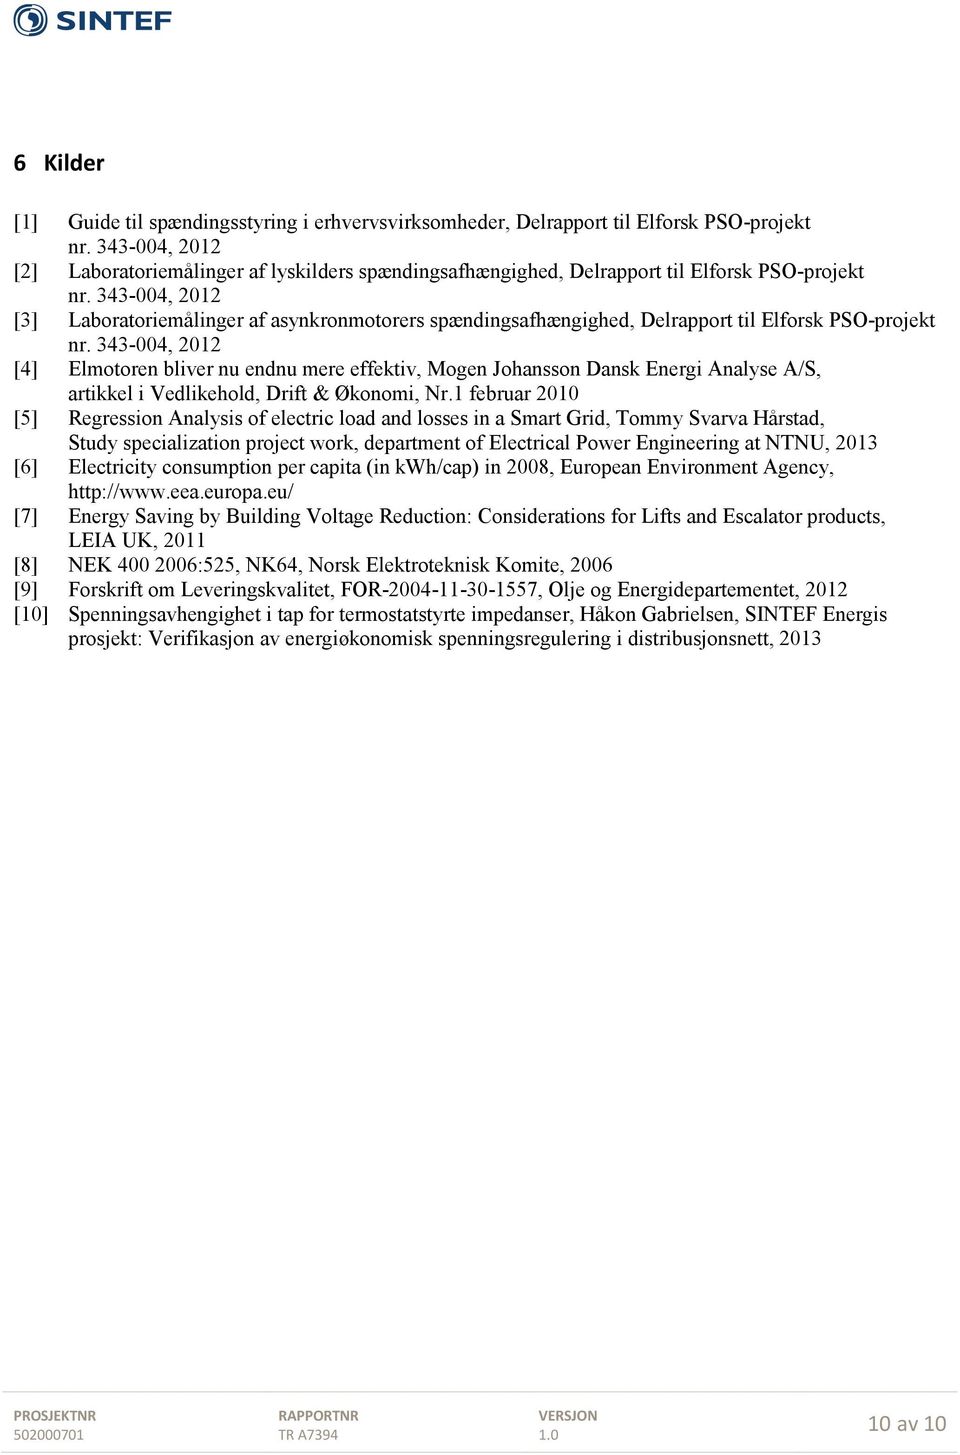 343-004, 2012 [3] Laboratoriemålinger af asynkronmotorers spændingsafhængighed, Delrapport til Elforsk PSO-projekt nr.